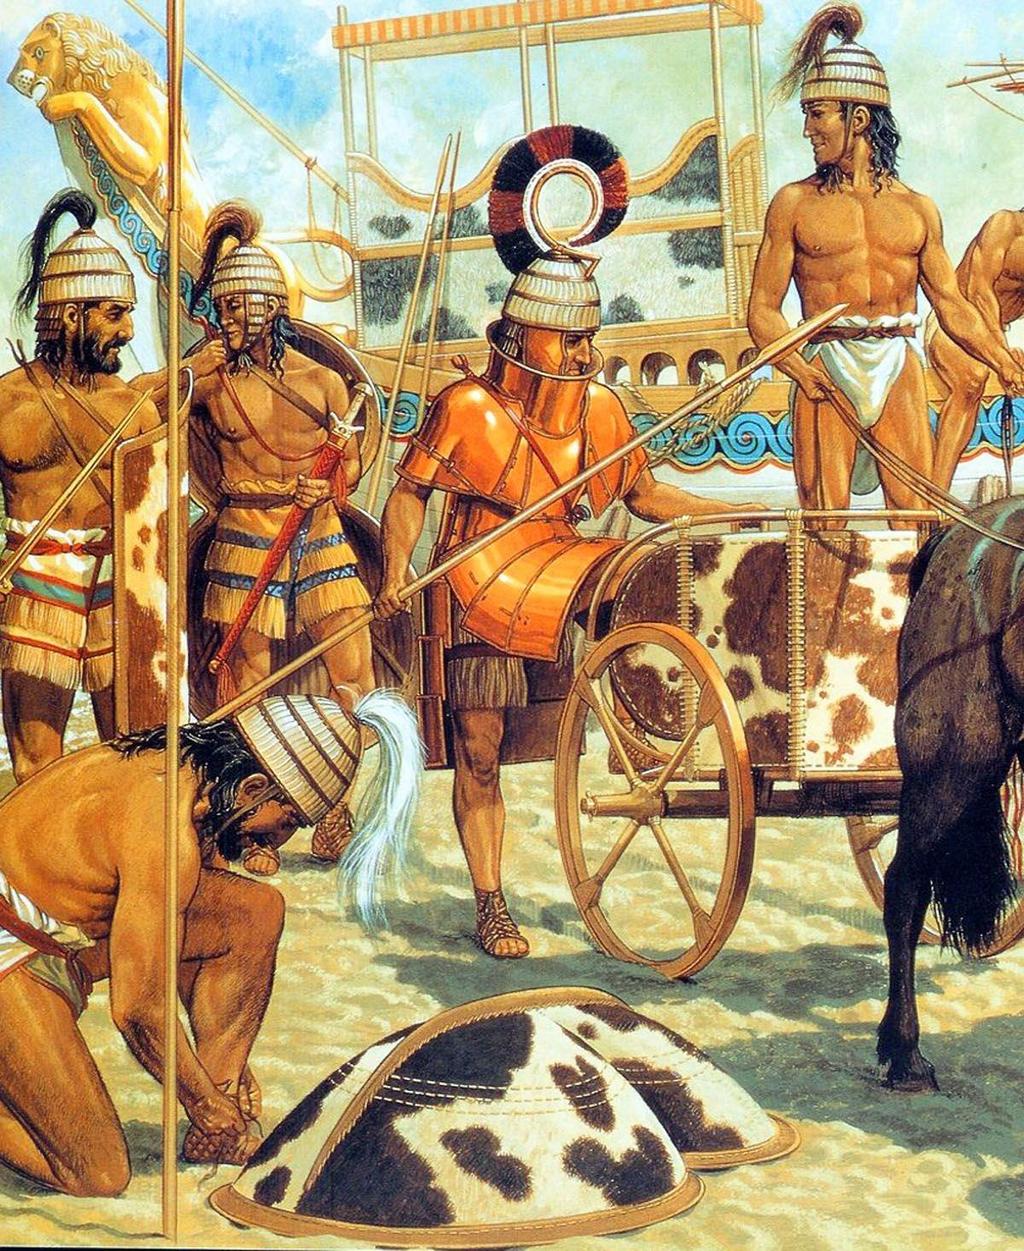 Οι Μυκηναίοι είχαν εμπορικές σχέσεις και επαφές με τους Μινωίτες της Κρήτης και έτσι γνώρισαν από κοντά τον Μινωικό πολιτισμό. Όταν λοιπόν κατά τον 14 ο αιώνα π.χ. η μινωική Κρήτη και τα παλάτια της καταστράφηκαν για δεύτερη φορά, άρχισε η σταδιακή κατάκτηση της Κρήτης από τους Μυκηναίους, ξεκινώντας από τα δυτικά του νησιού.